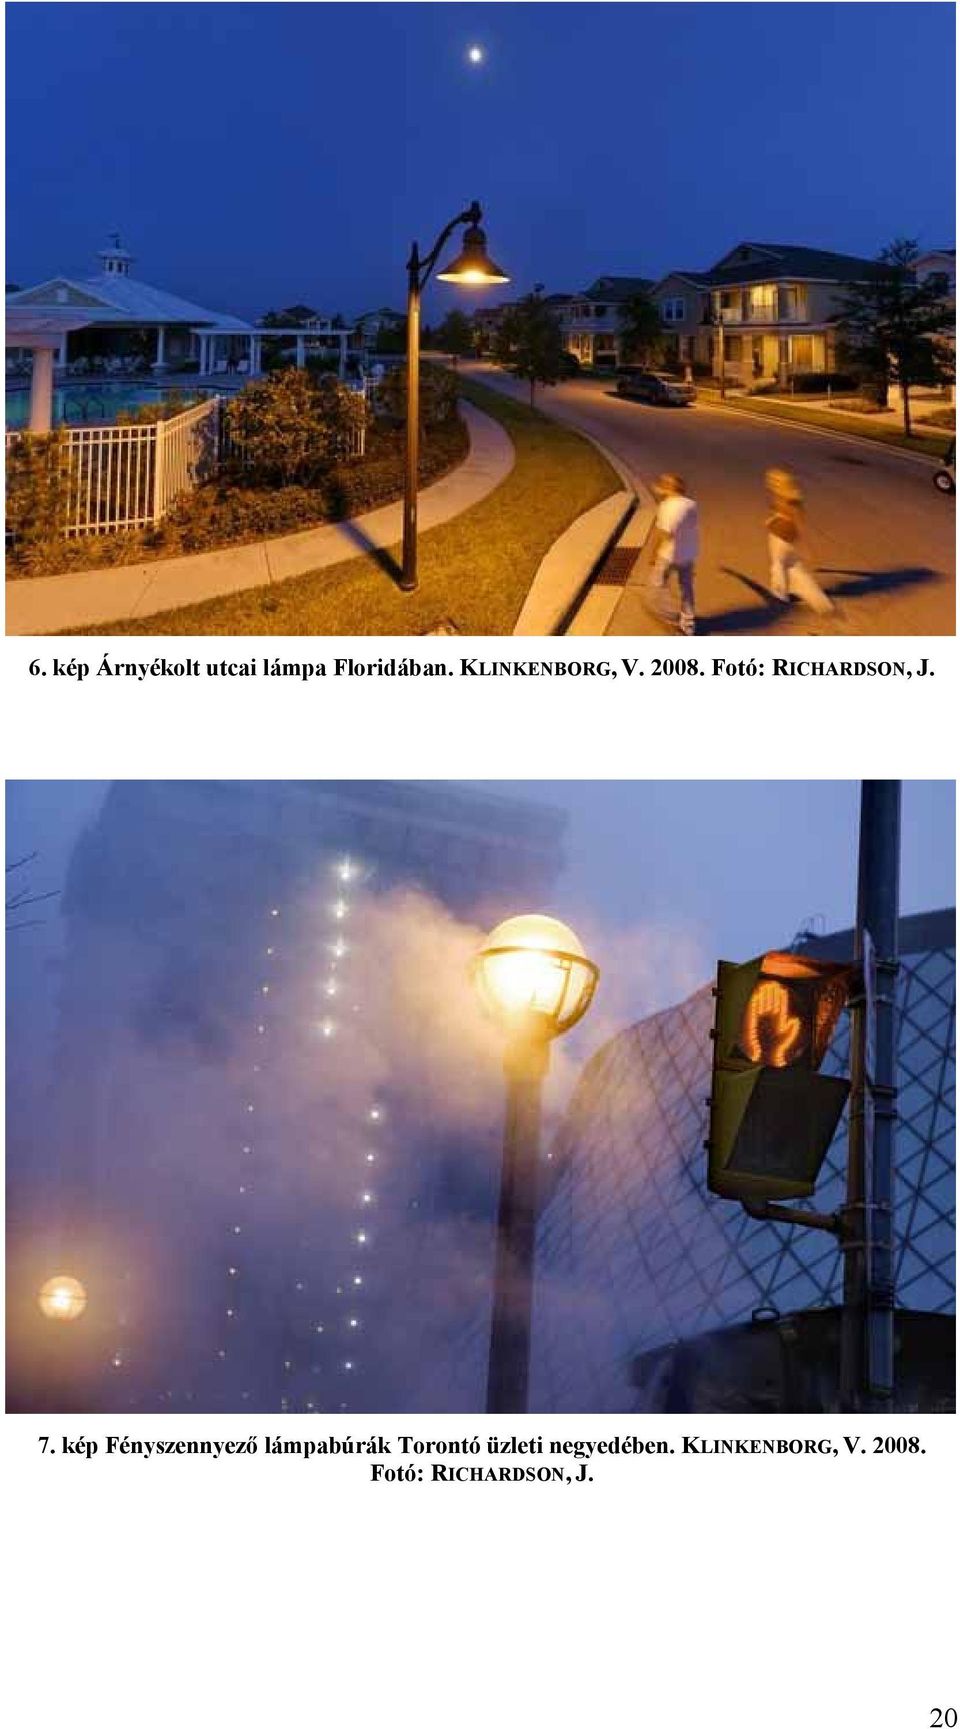 kép Fényszennyező lámpabúrák Torontó üzleti